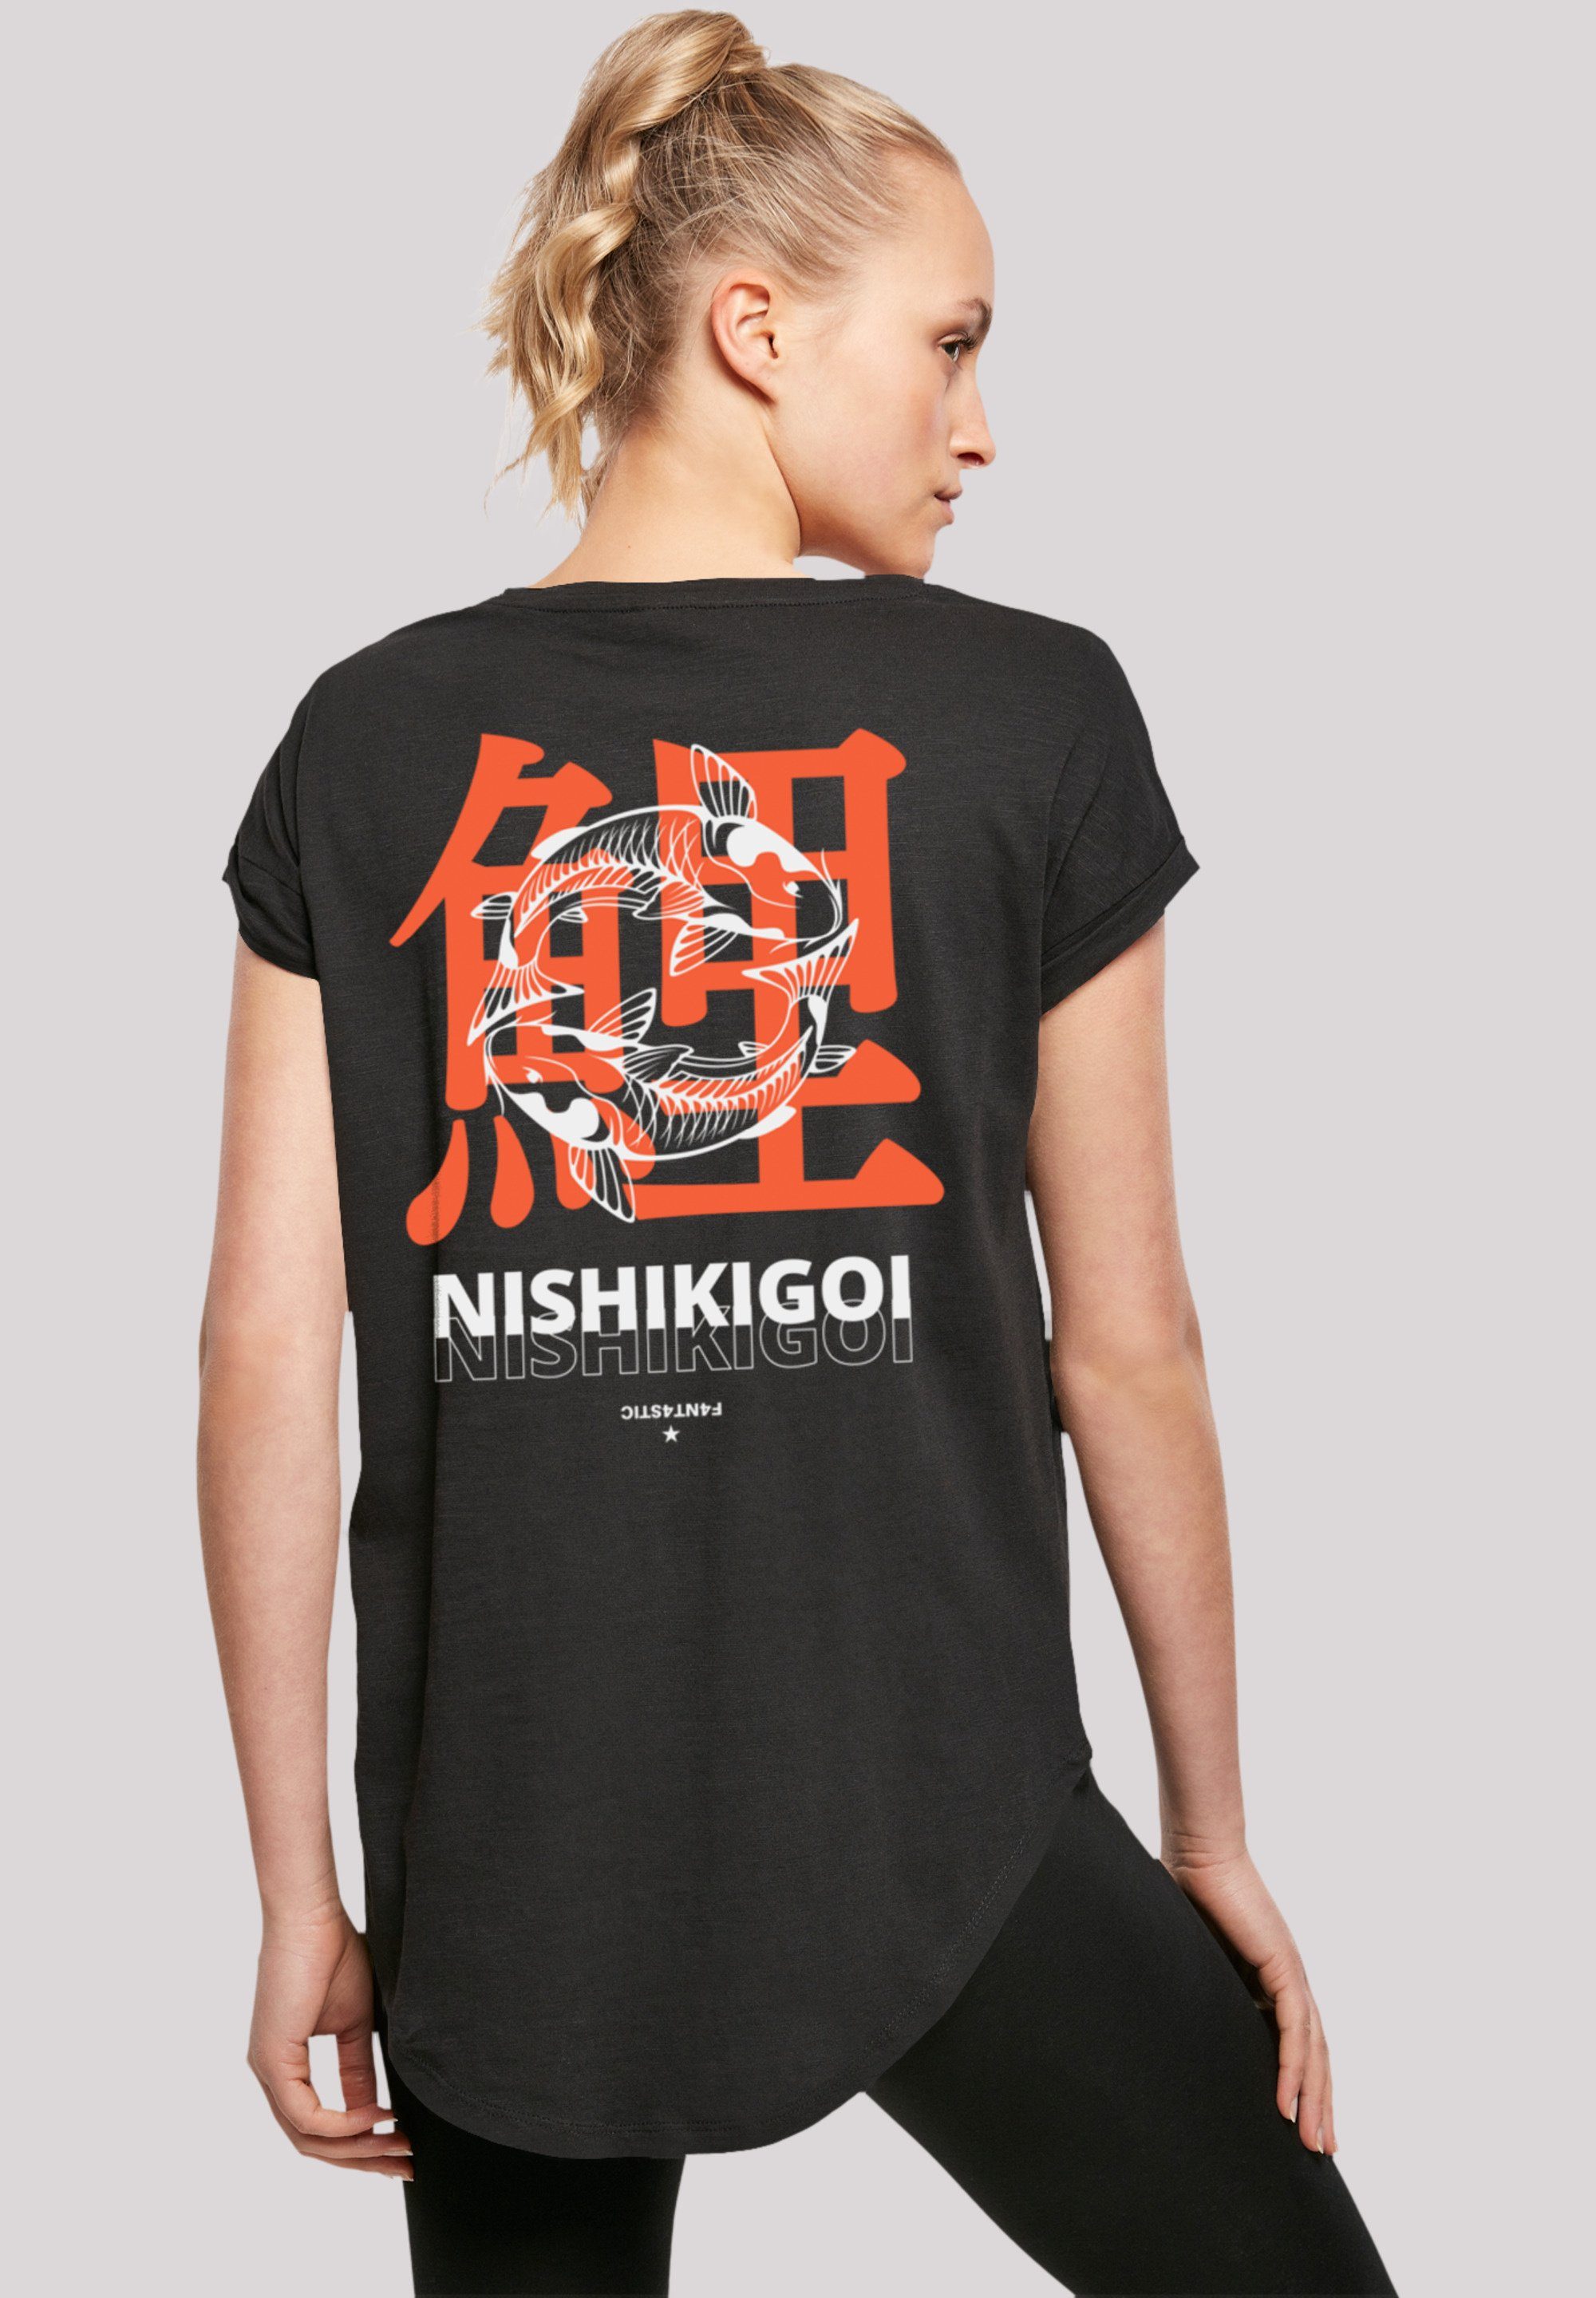 Nishikigoi Baumwollstoff weicher Japan Grafik Print, Tragekomfort Koi T-Shirt mit F4NT4STIC hohem Sehr